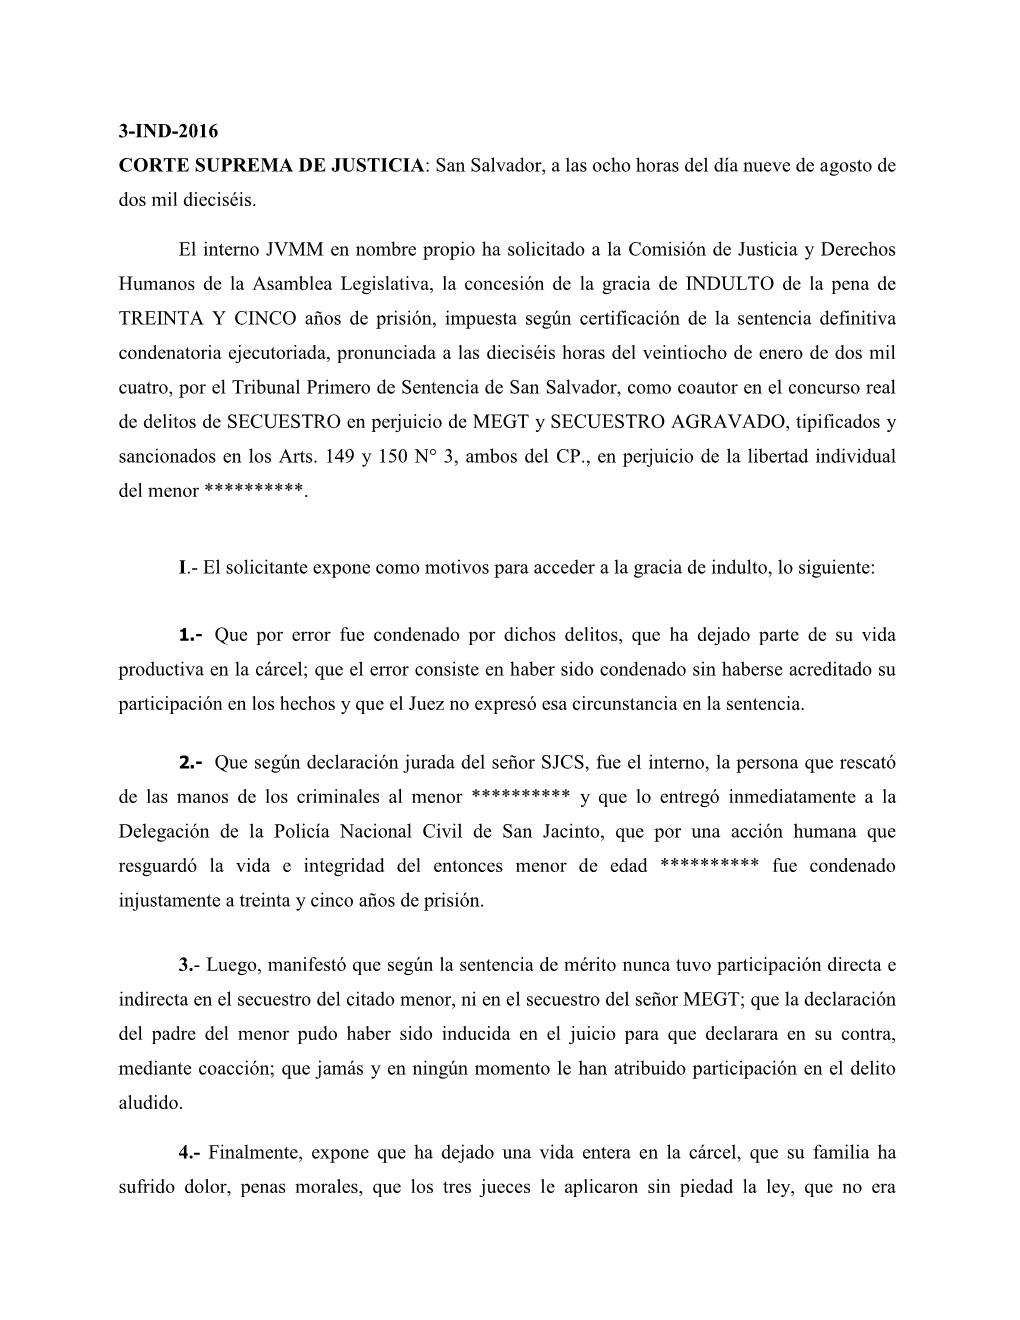 3-IND-2016 CORTE SUPREMA DE JUSTICIA: San Salvador, a Las Ocho